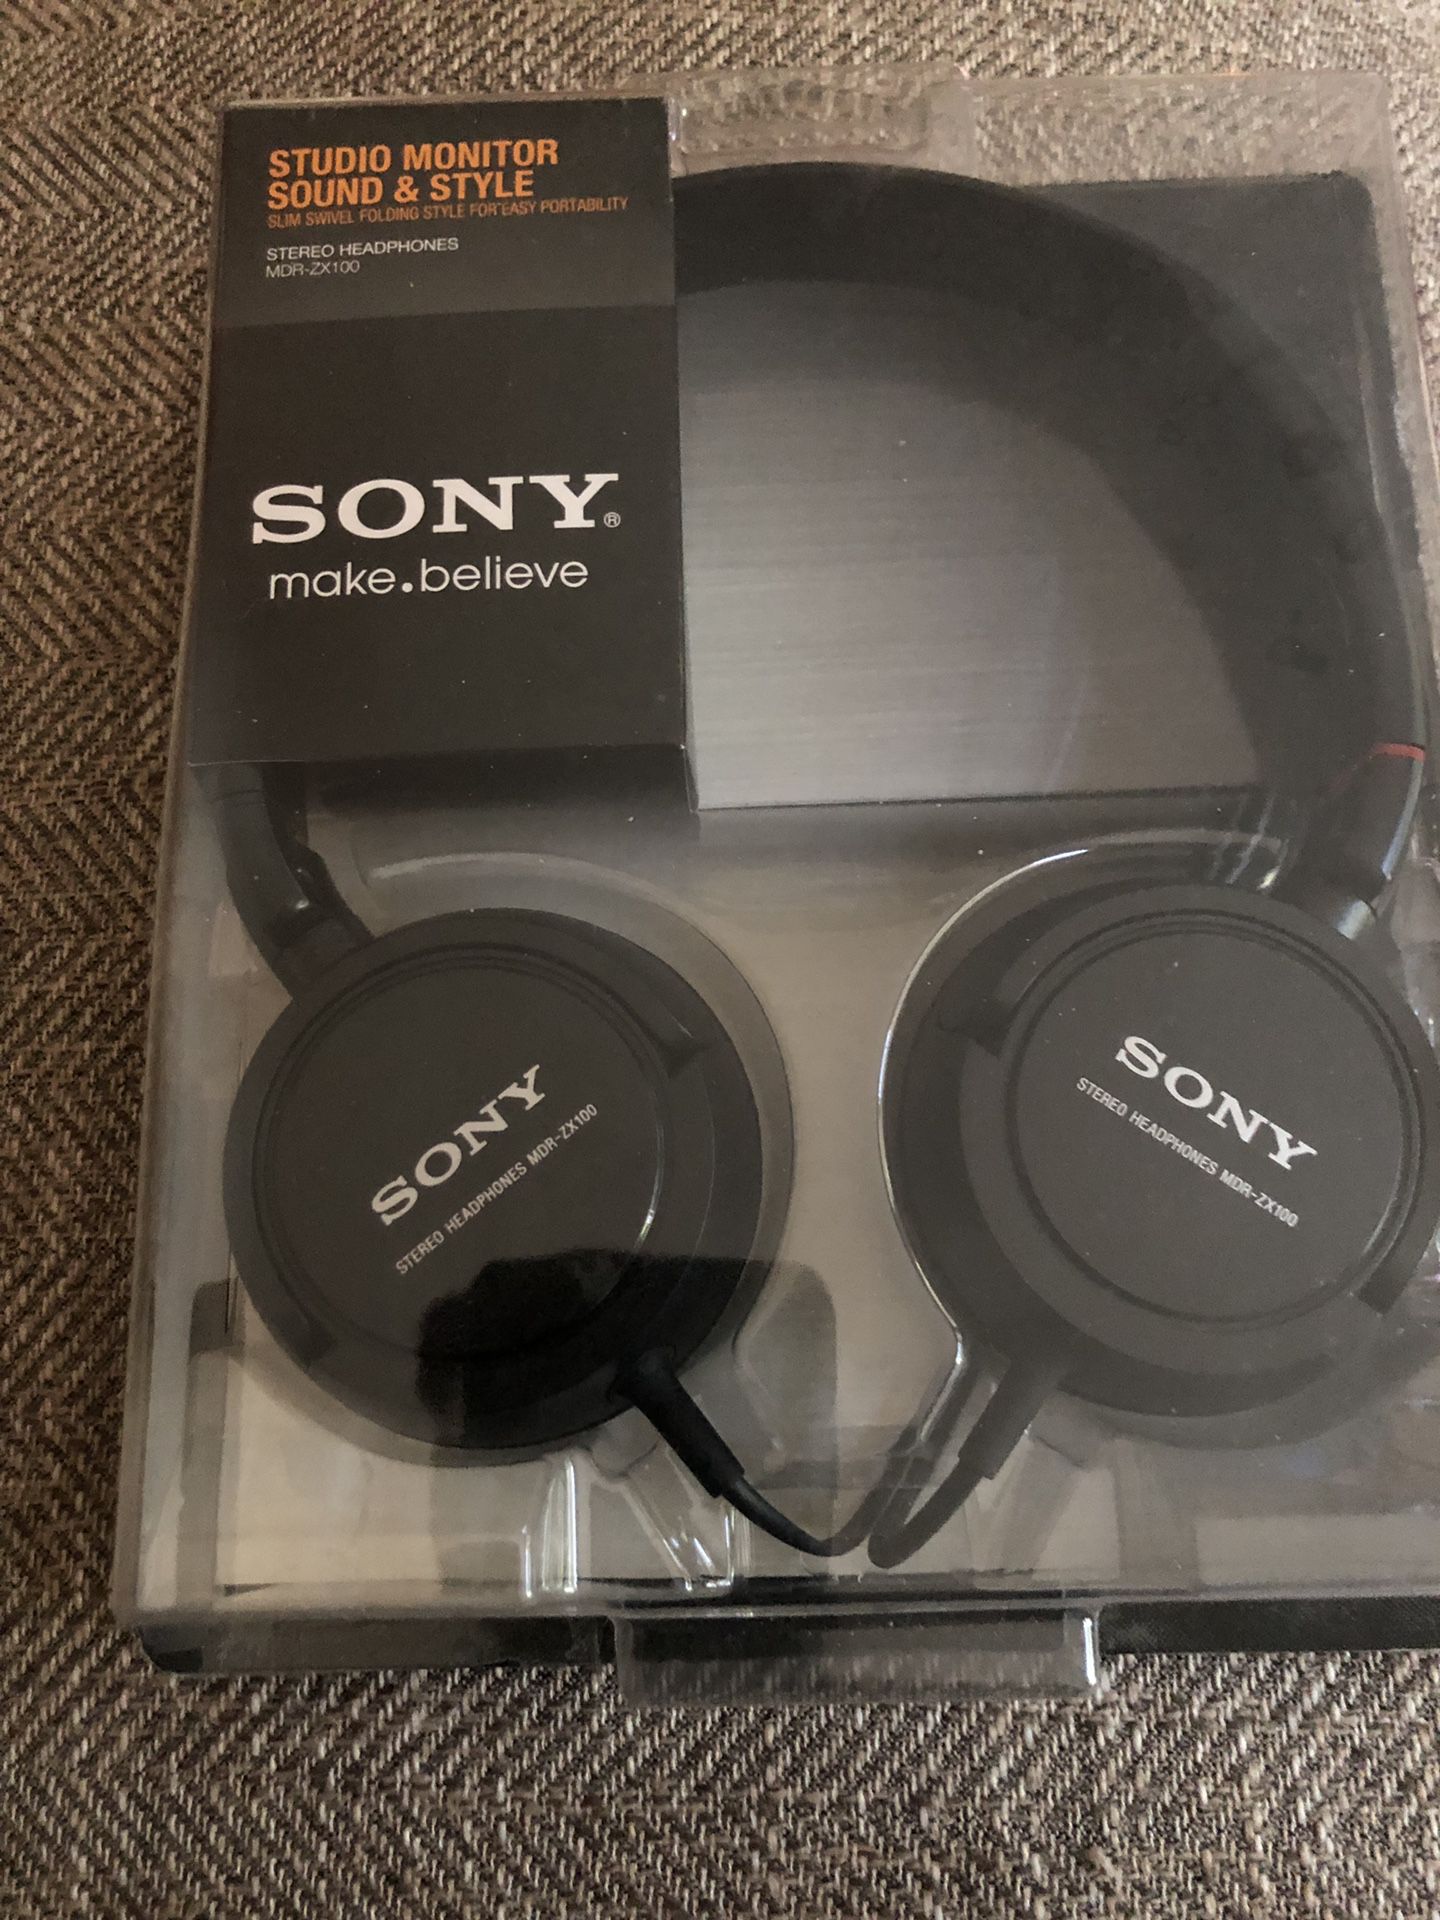 Sony Stereo Headphones